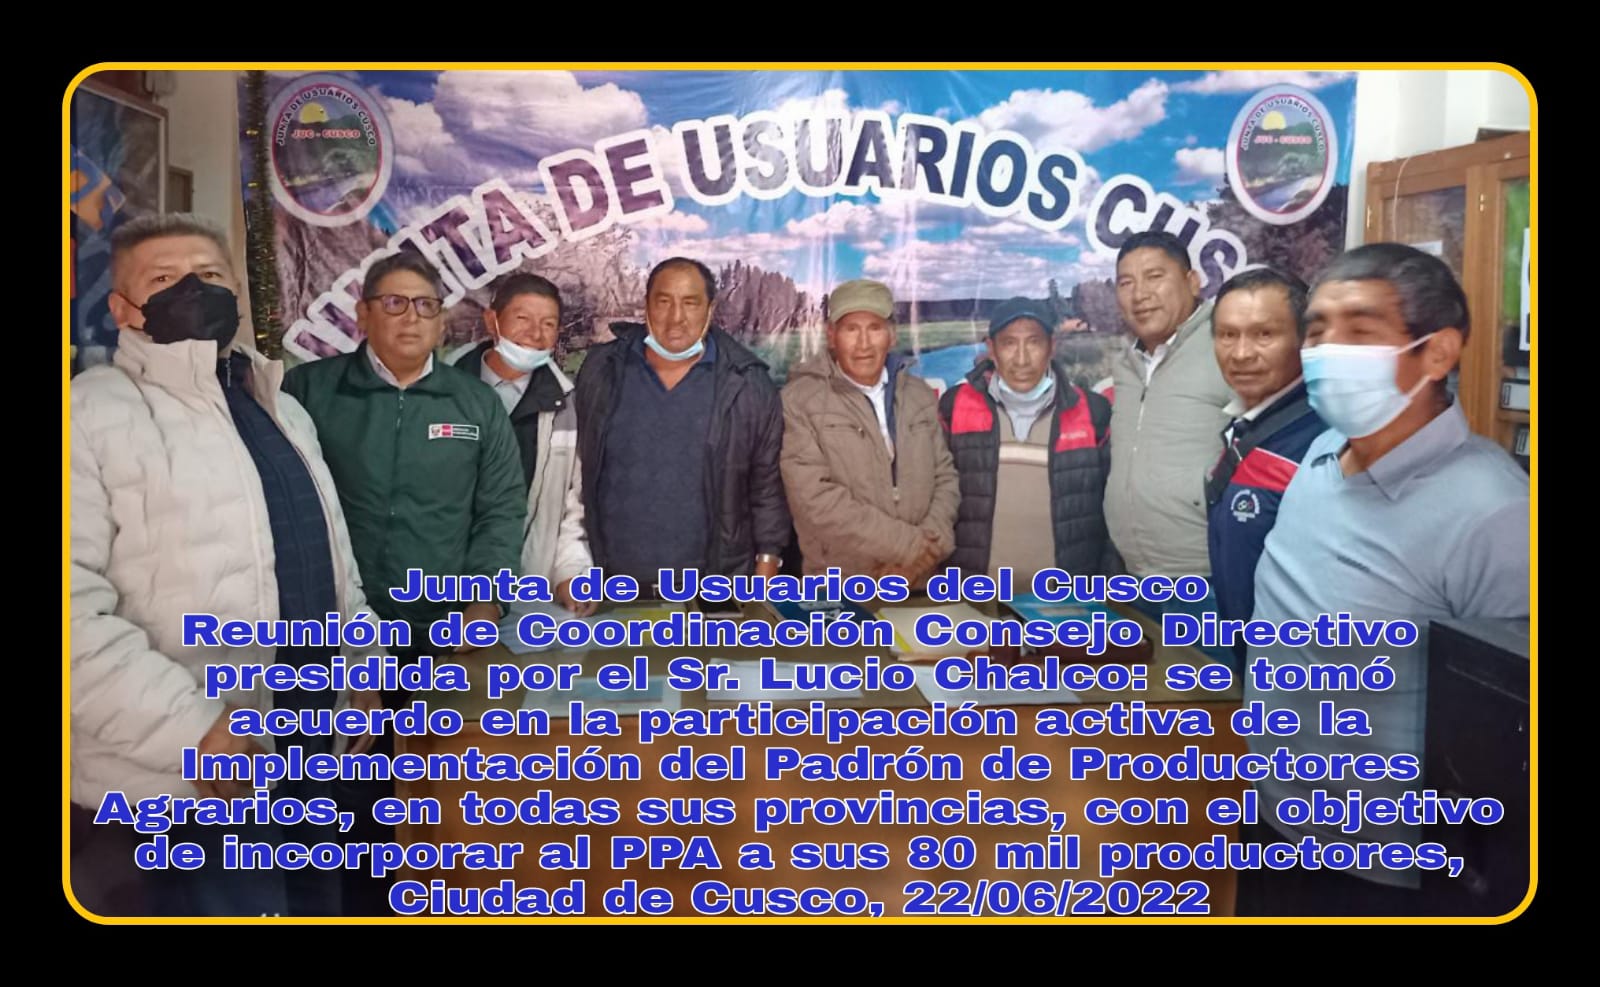 Reunión de coordinación con la Junta de Usuarios de Cusco